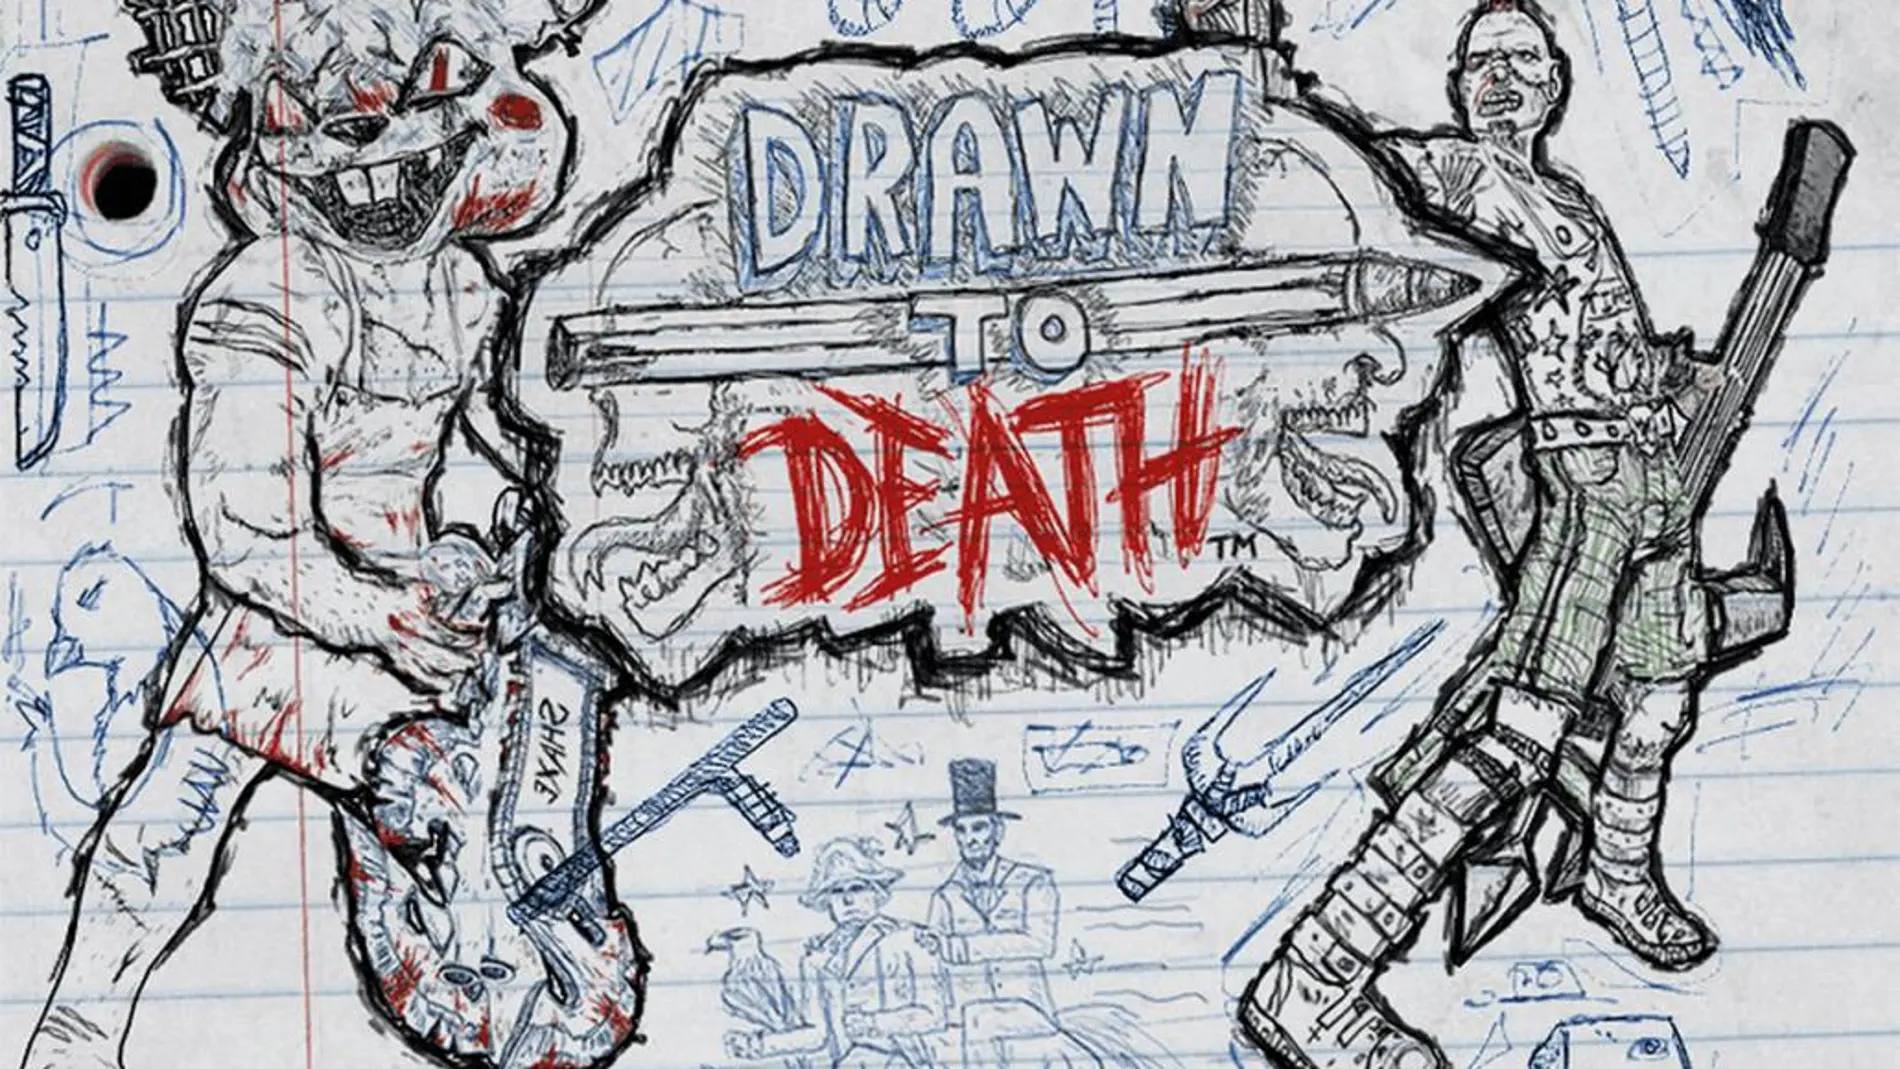 Drawn to Death será gratuito para los suscriptores de PlayStation Plus en abril